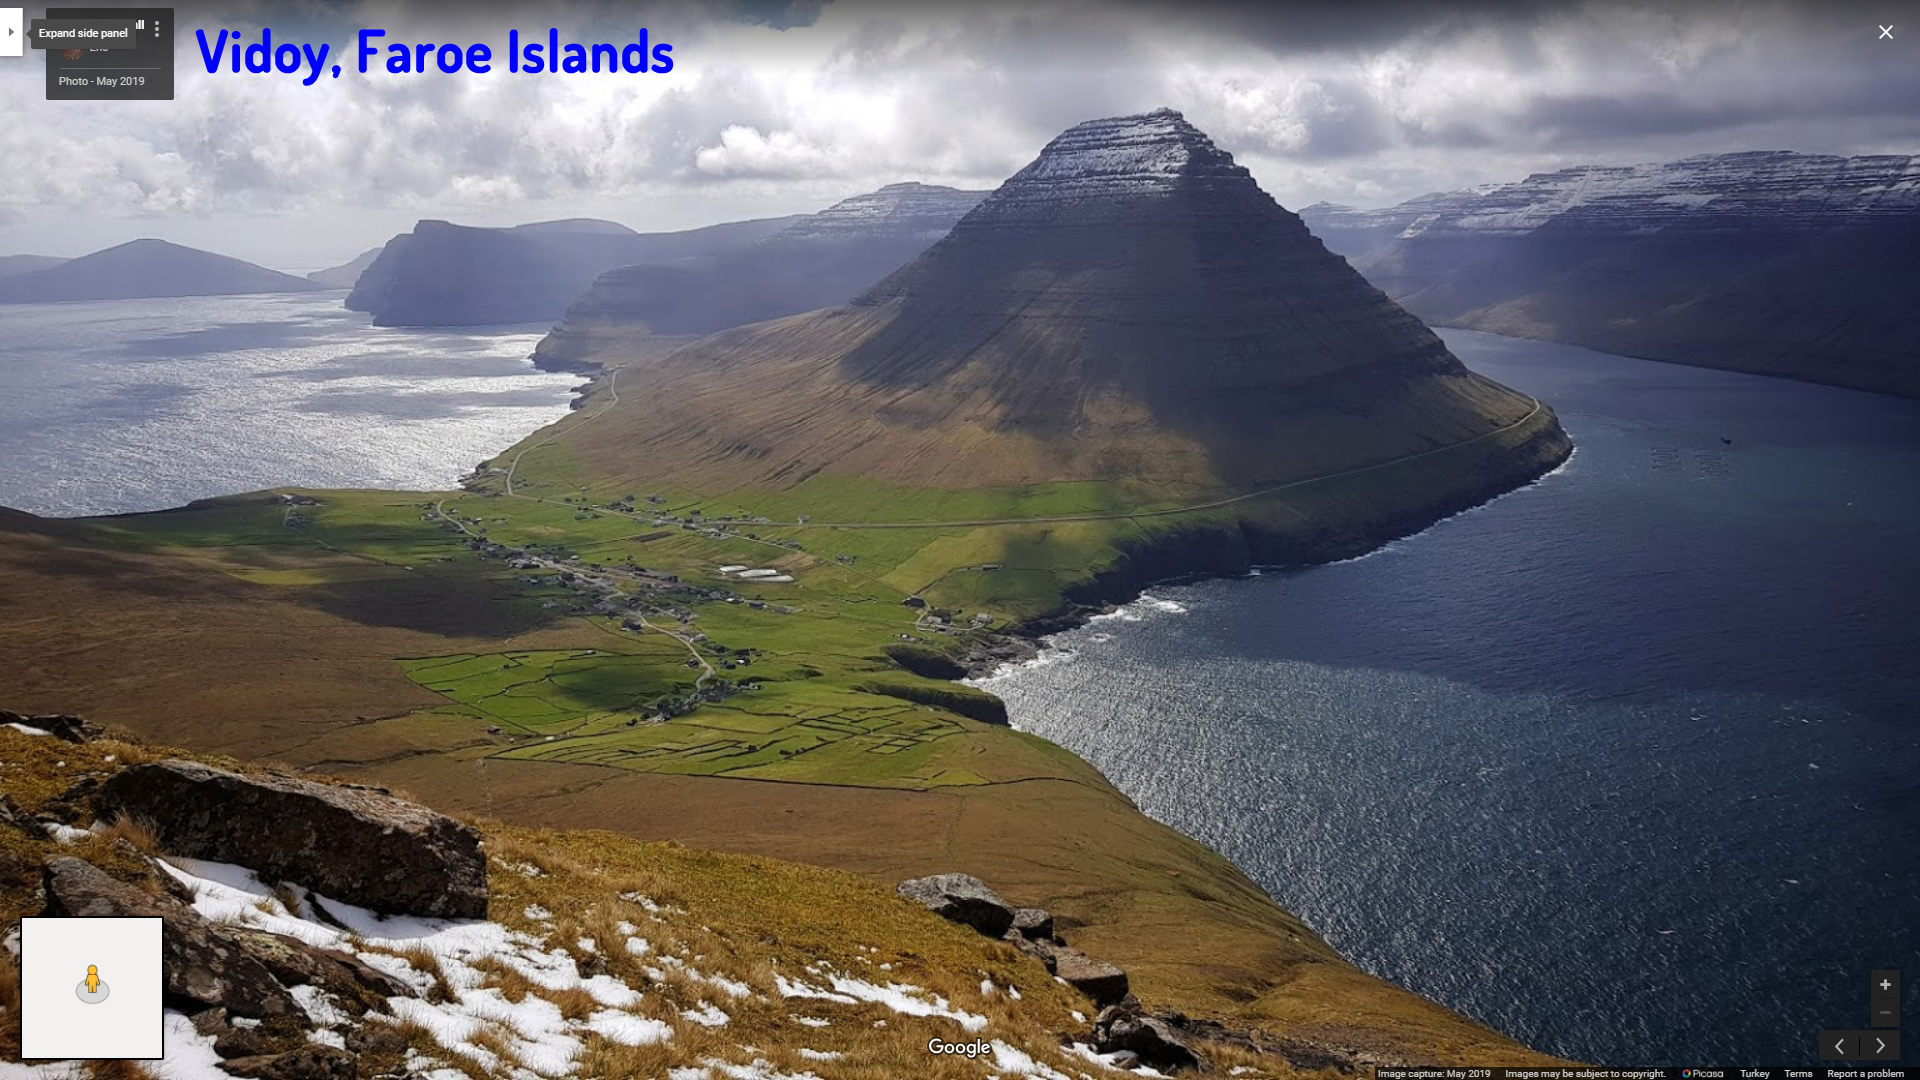 Vidoy Faroe Islands